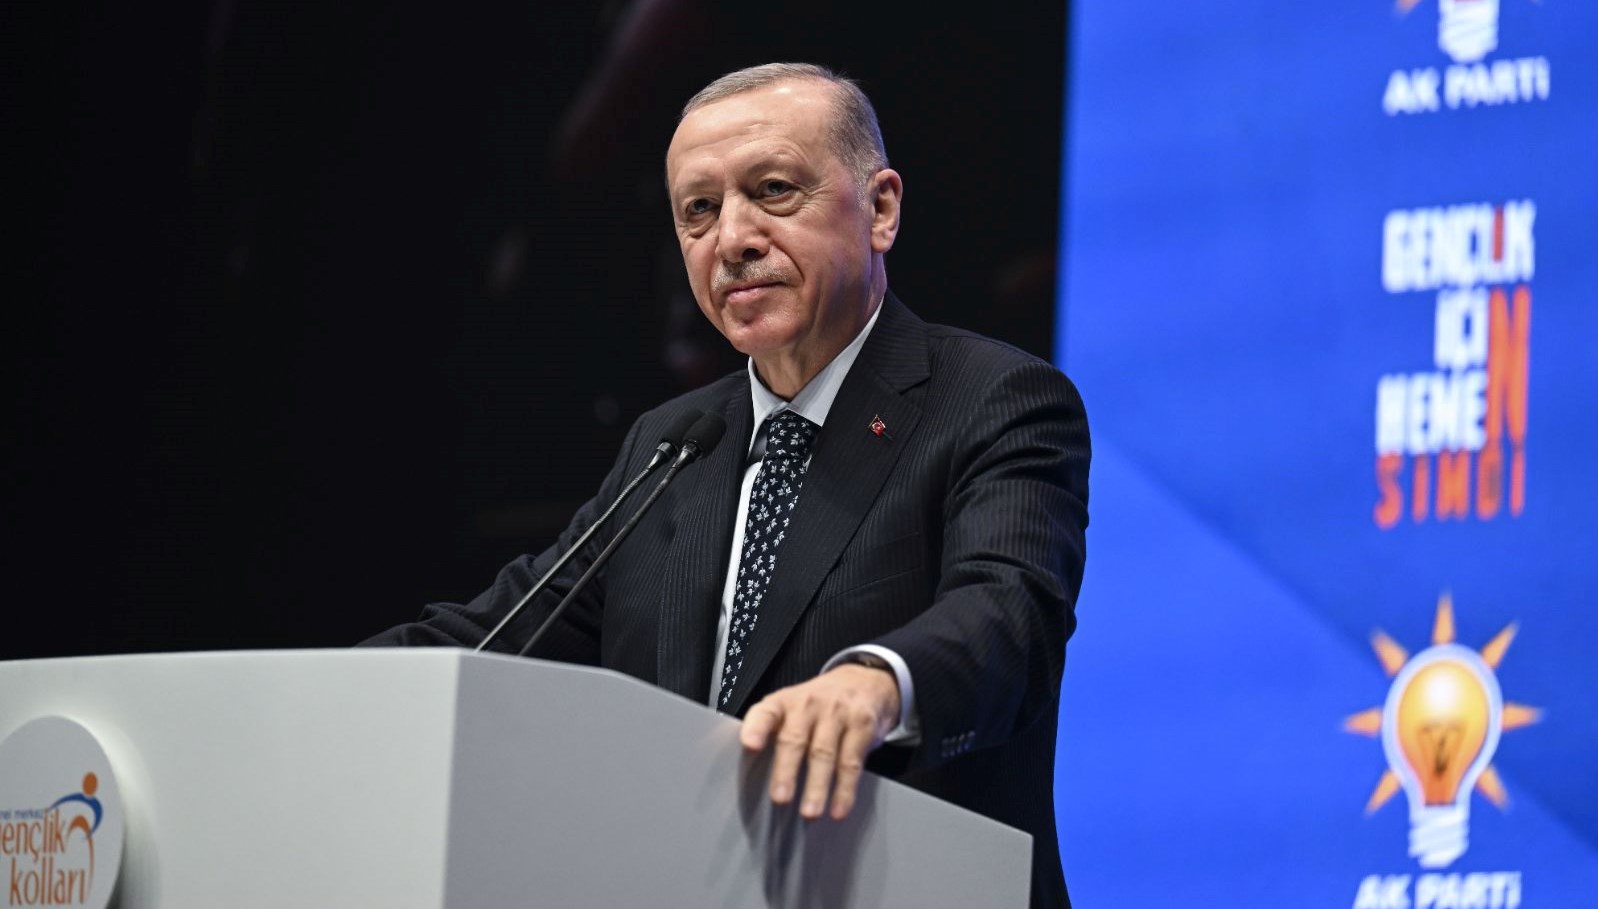 SON DAKİKA HABERİ: Cumhurbaşkanı Erdoğan: Bizim Alevilik diye bir dinimiz yok, tek dinimiz var İslam